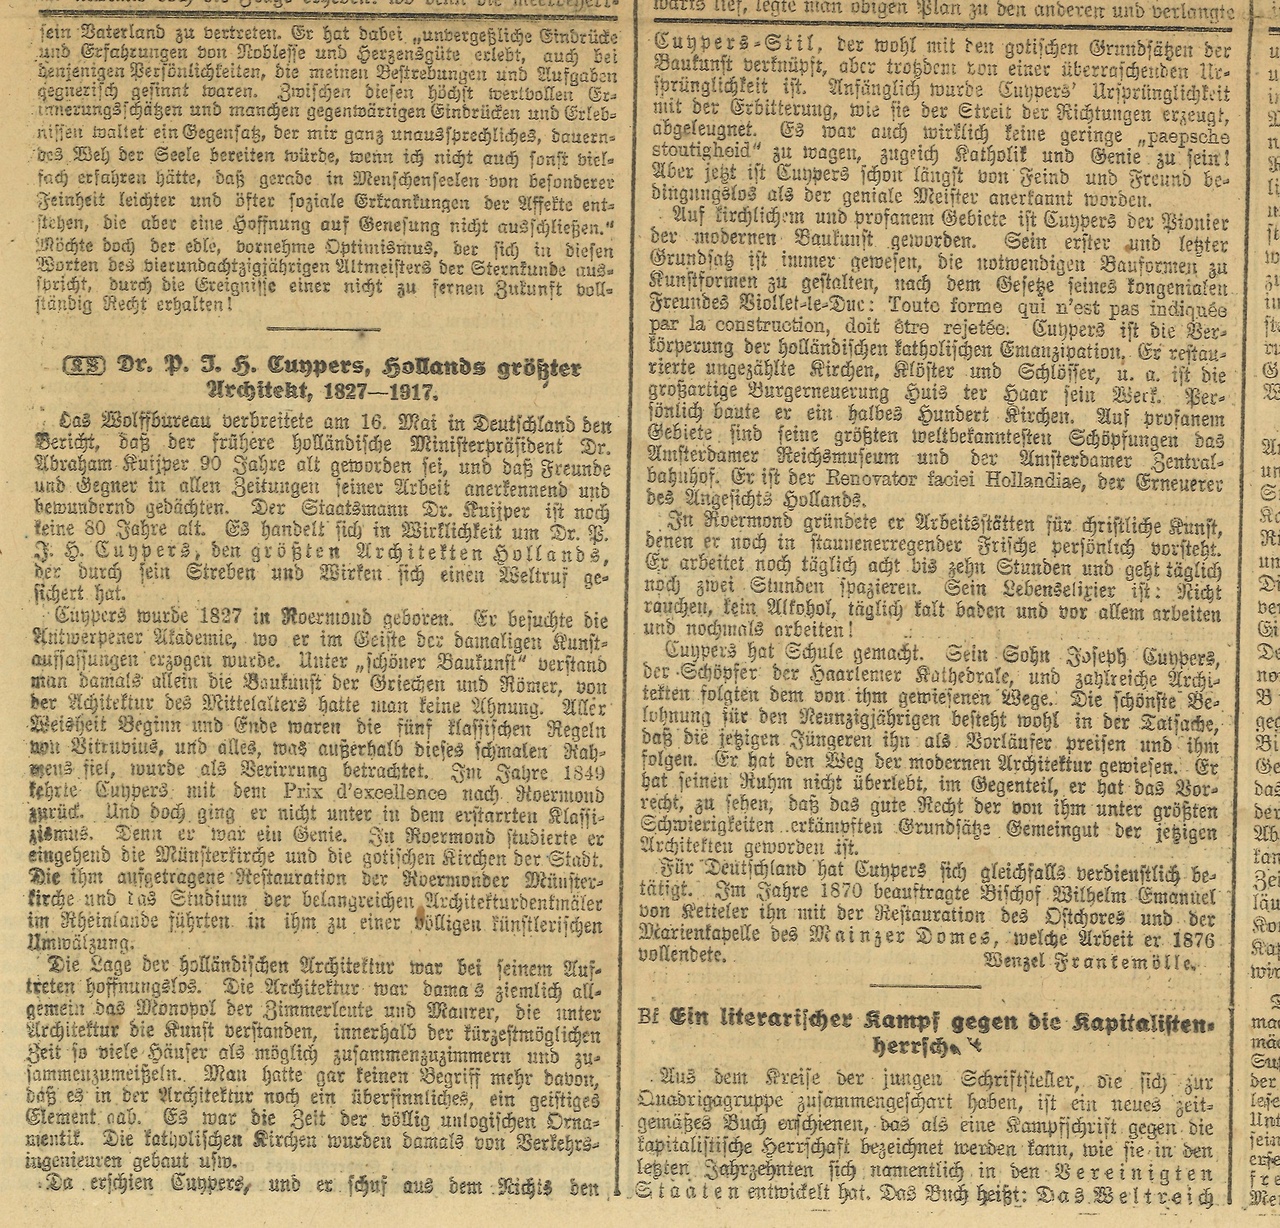 Duitse krant de "Kölnische Volkszeitung, Wochenausgabe" van 31 mei 1917 met daarin op pagina 7 een groot artikel gewijd aan de 90-ste verjaardag van dr. P.J.H. Cuypers.